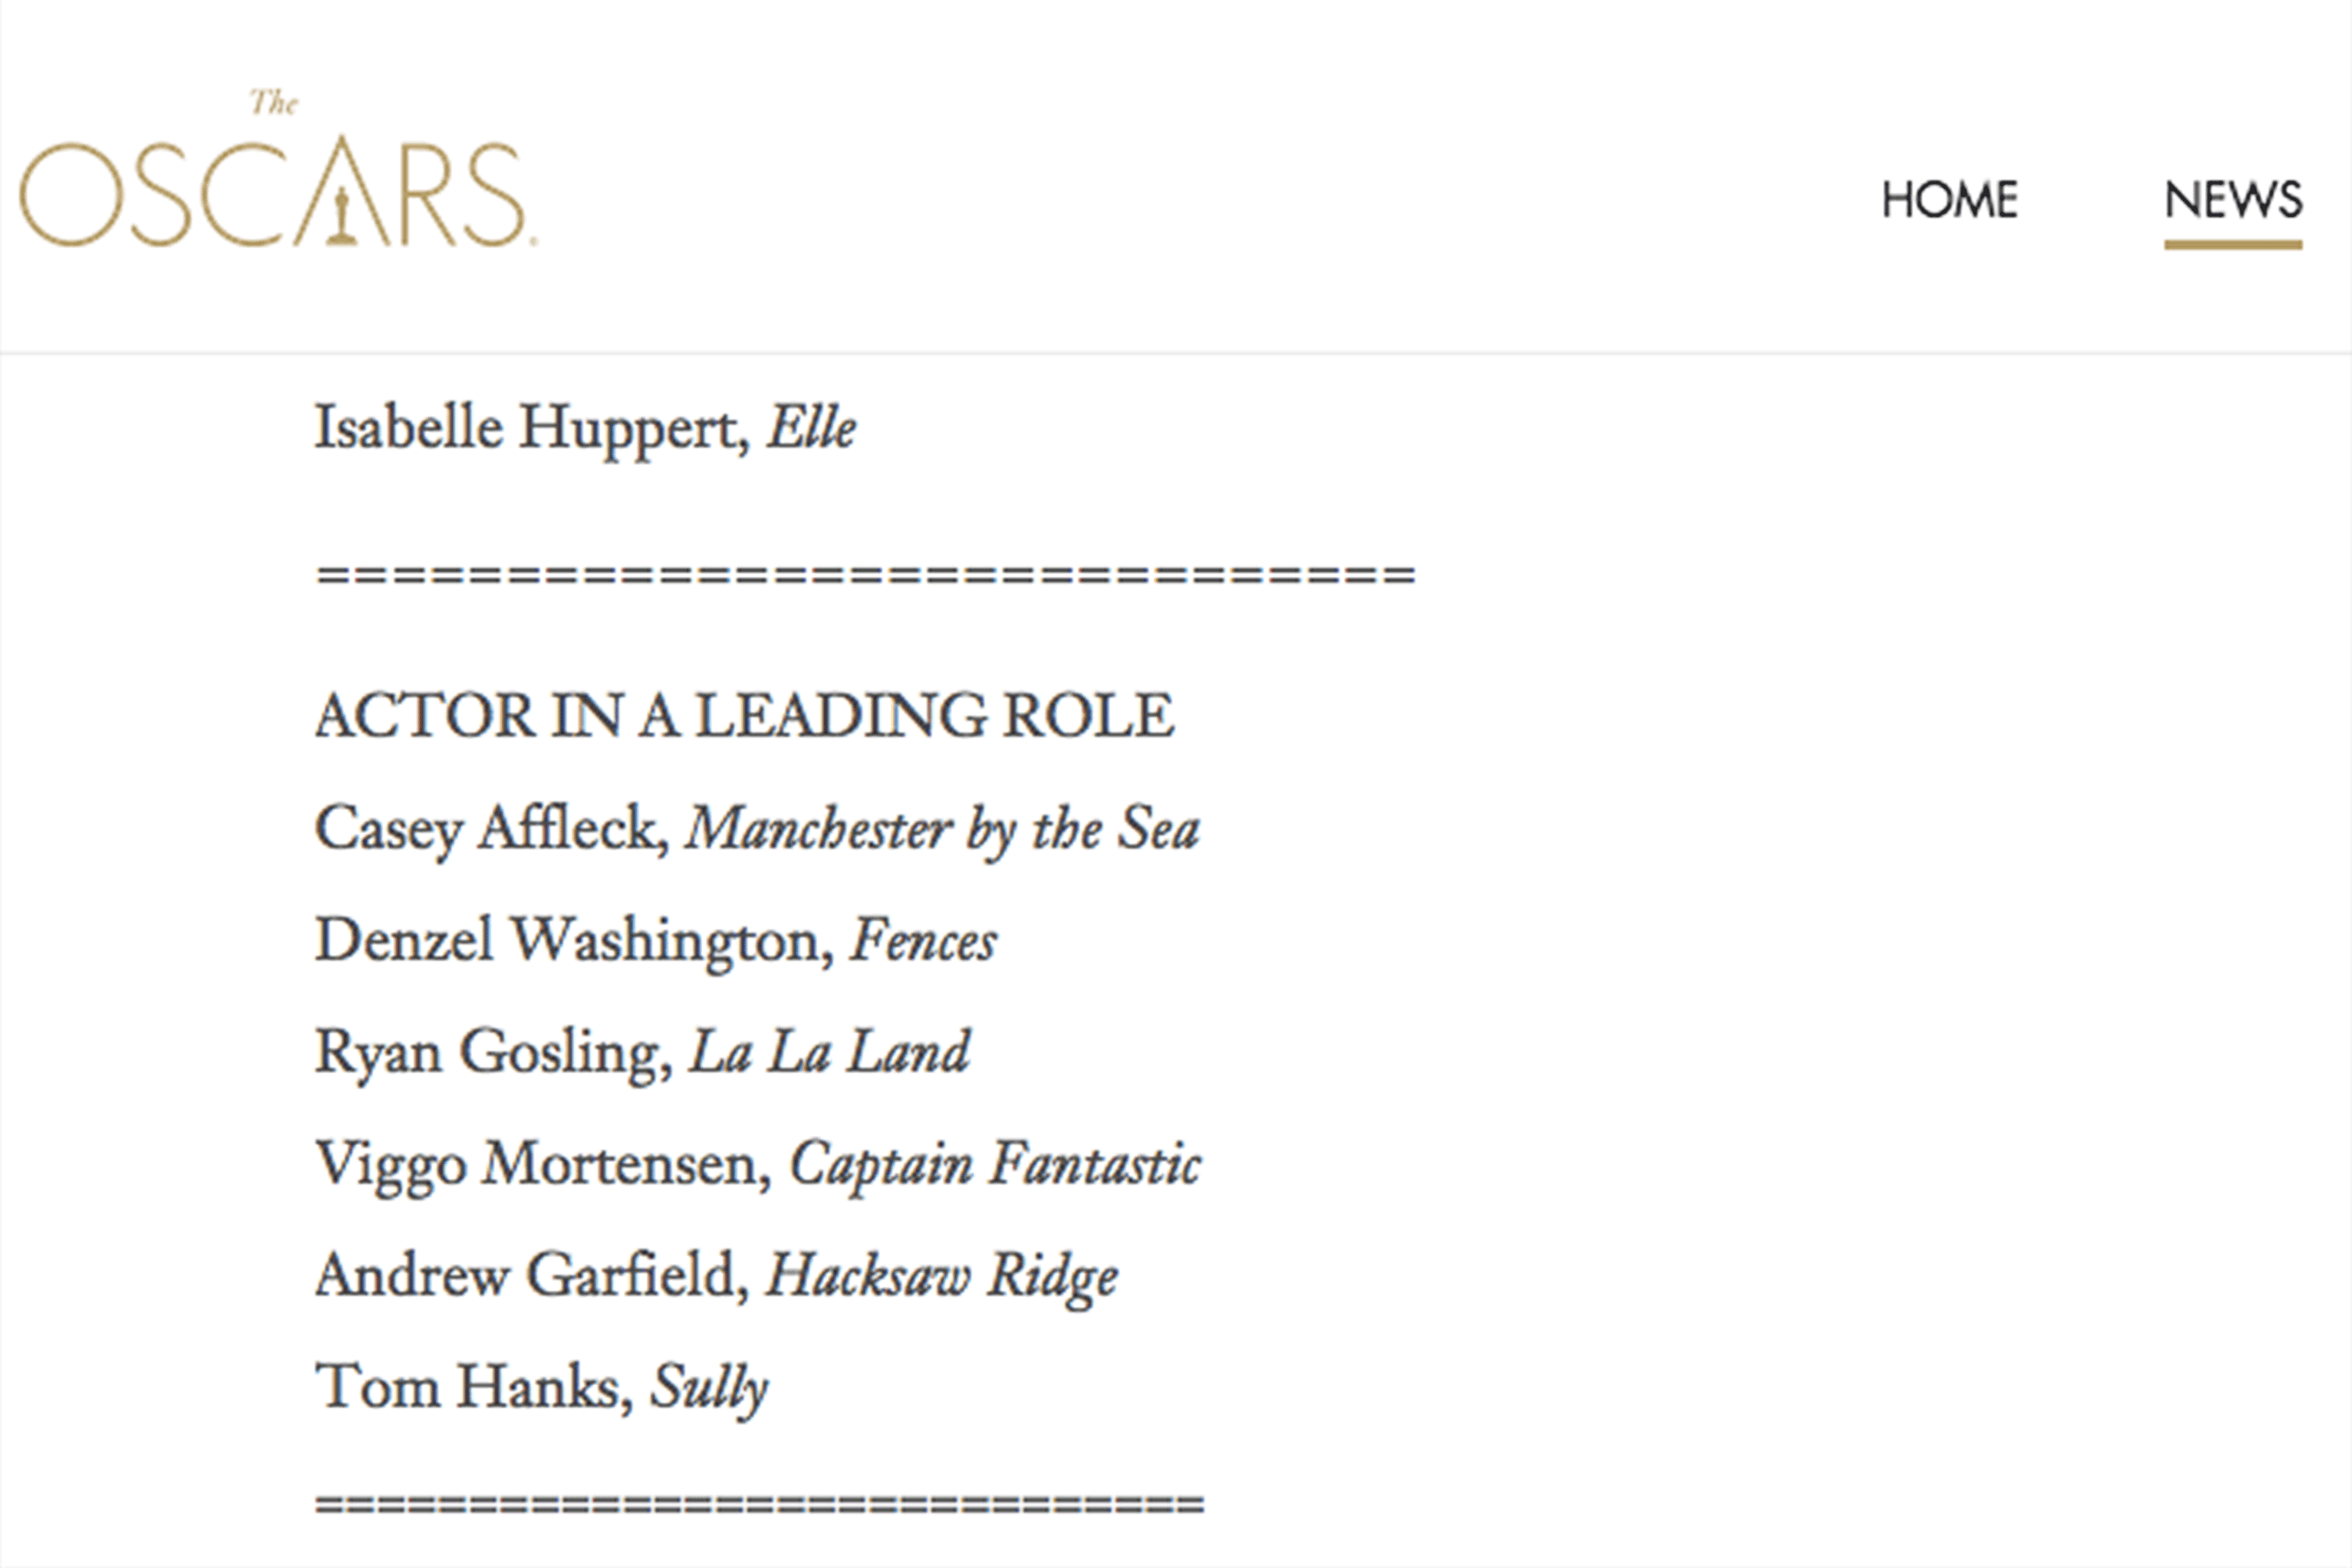 Amy Adams y Tom Hanks fueron nominados por error a los premios Oscar